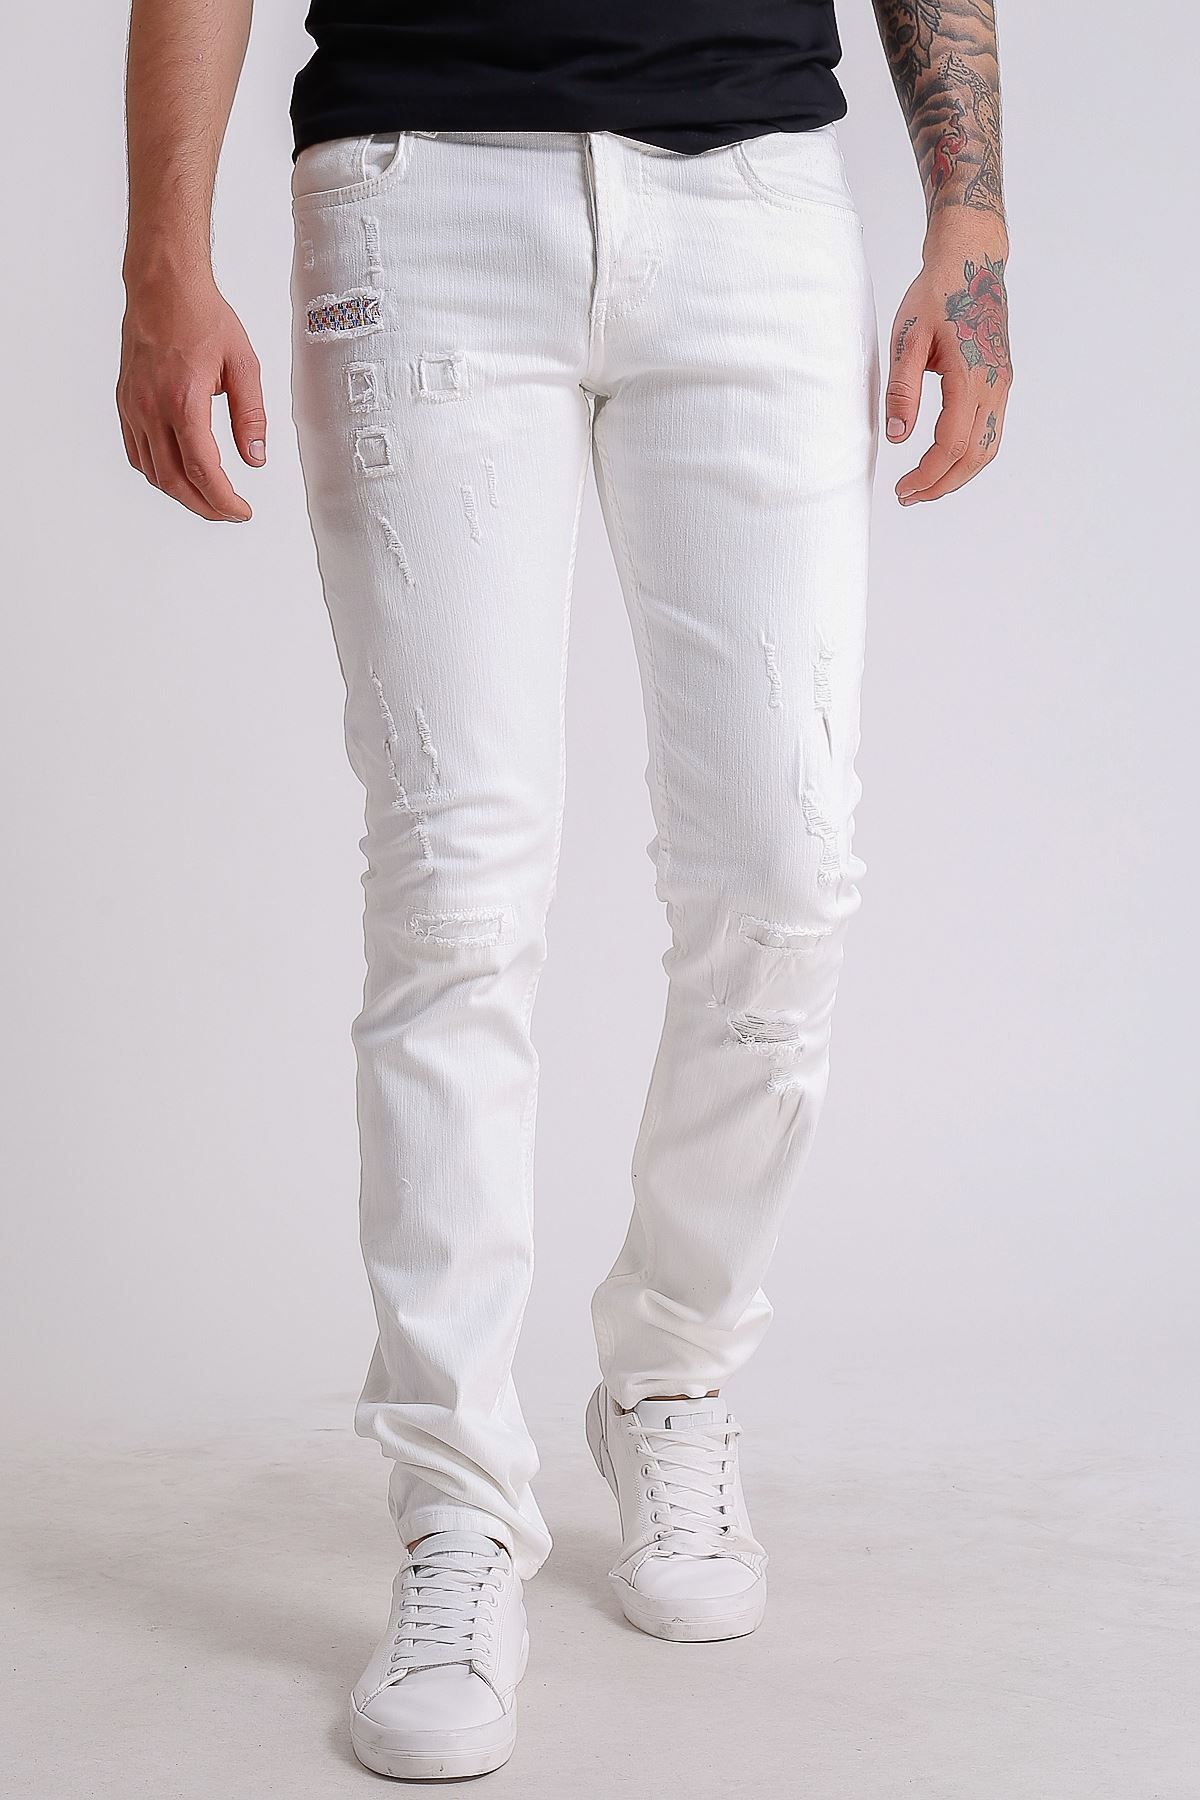 LTC Jeans Beyaz Destroy Slimfit Erkek Kot Pantolon